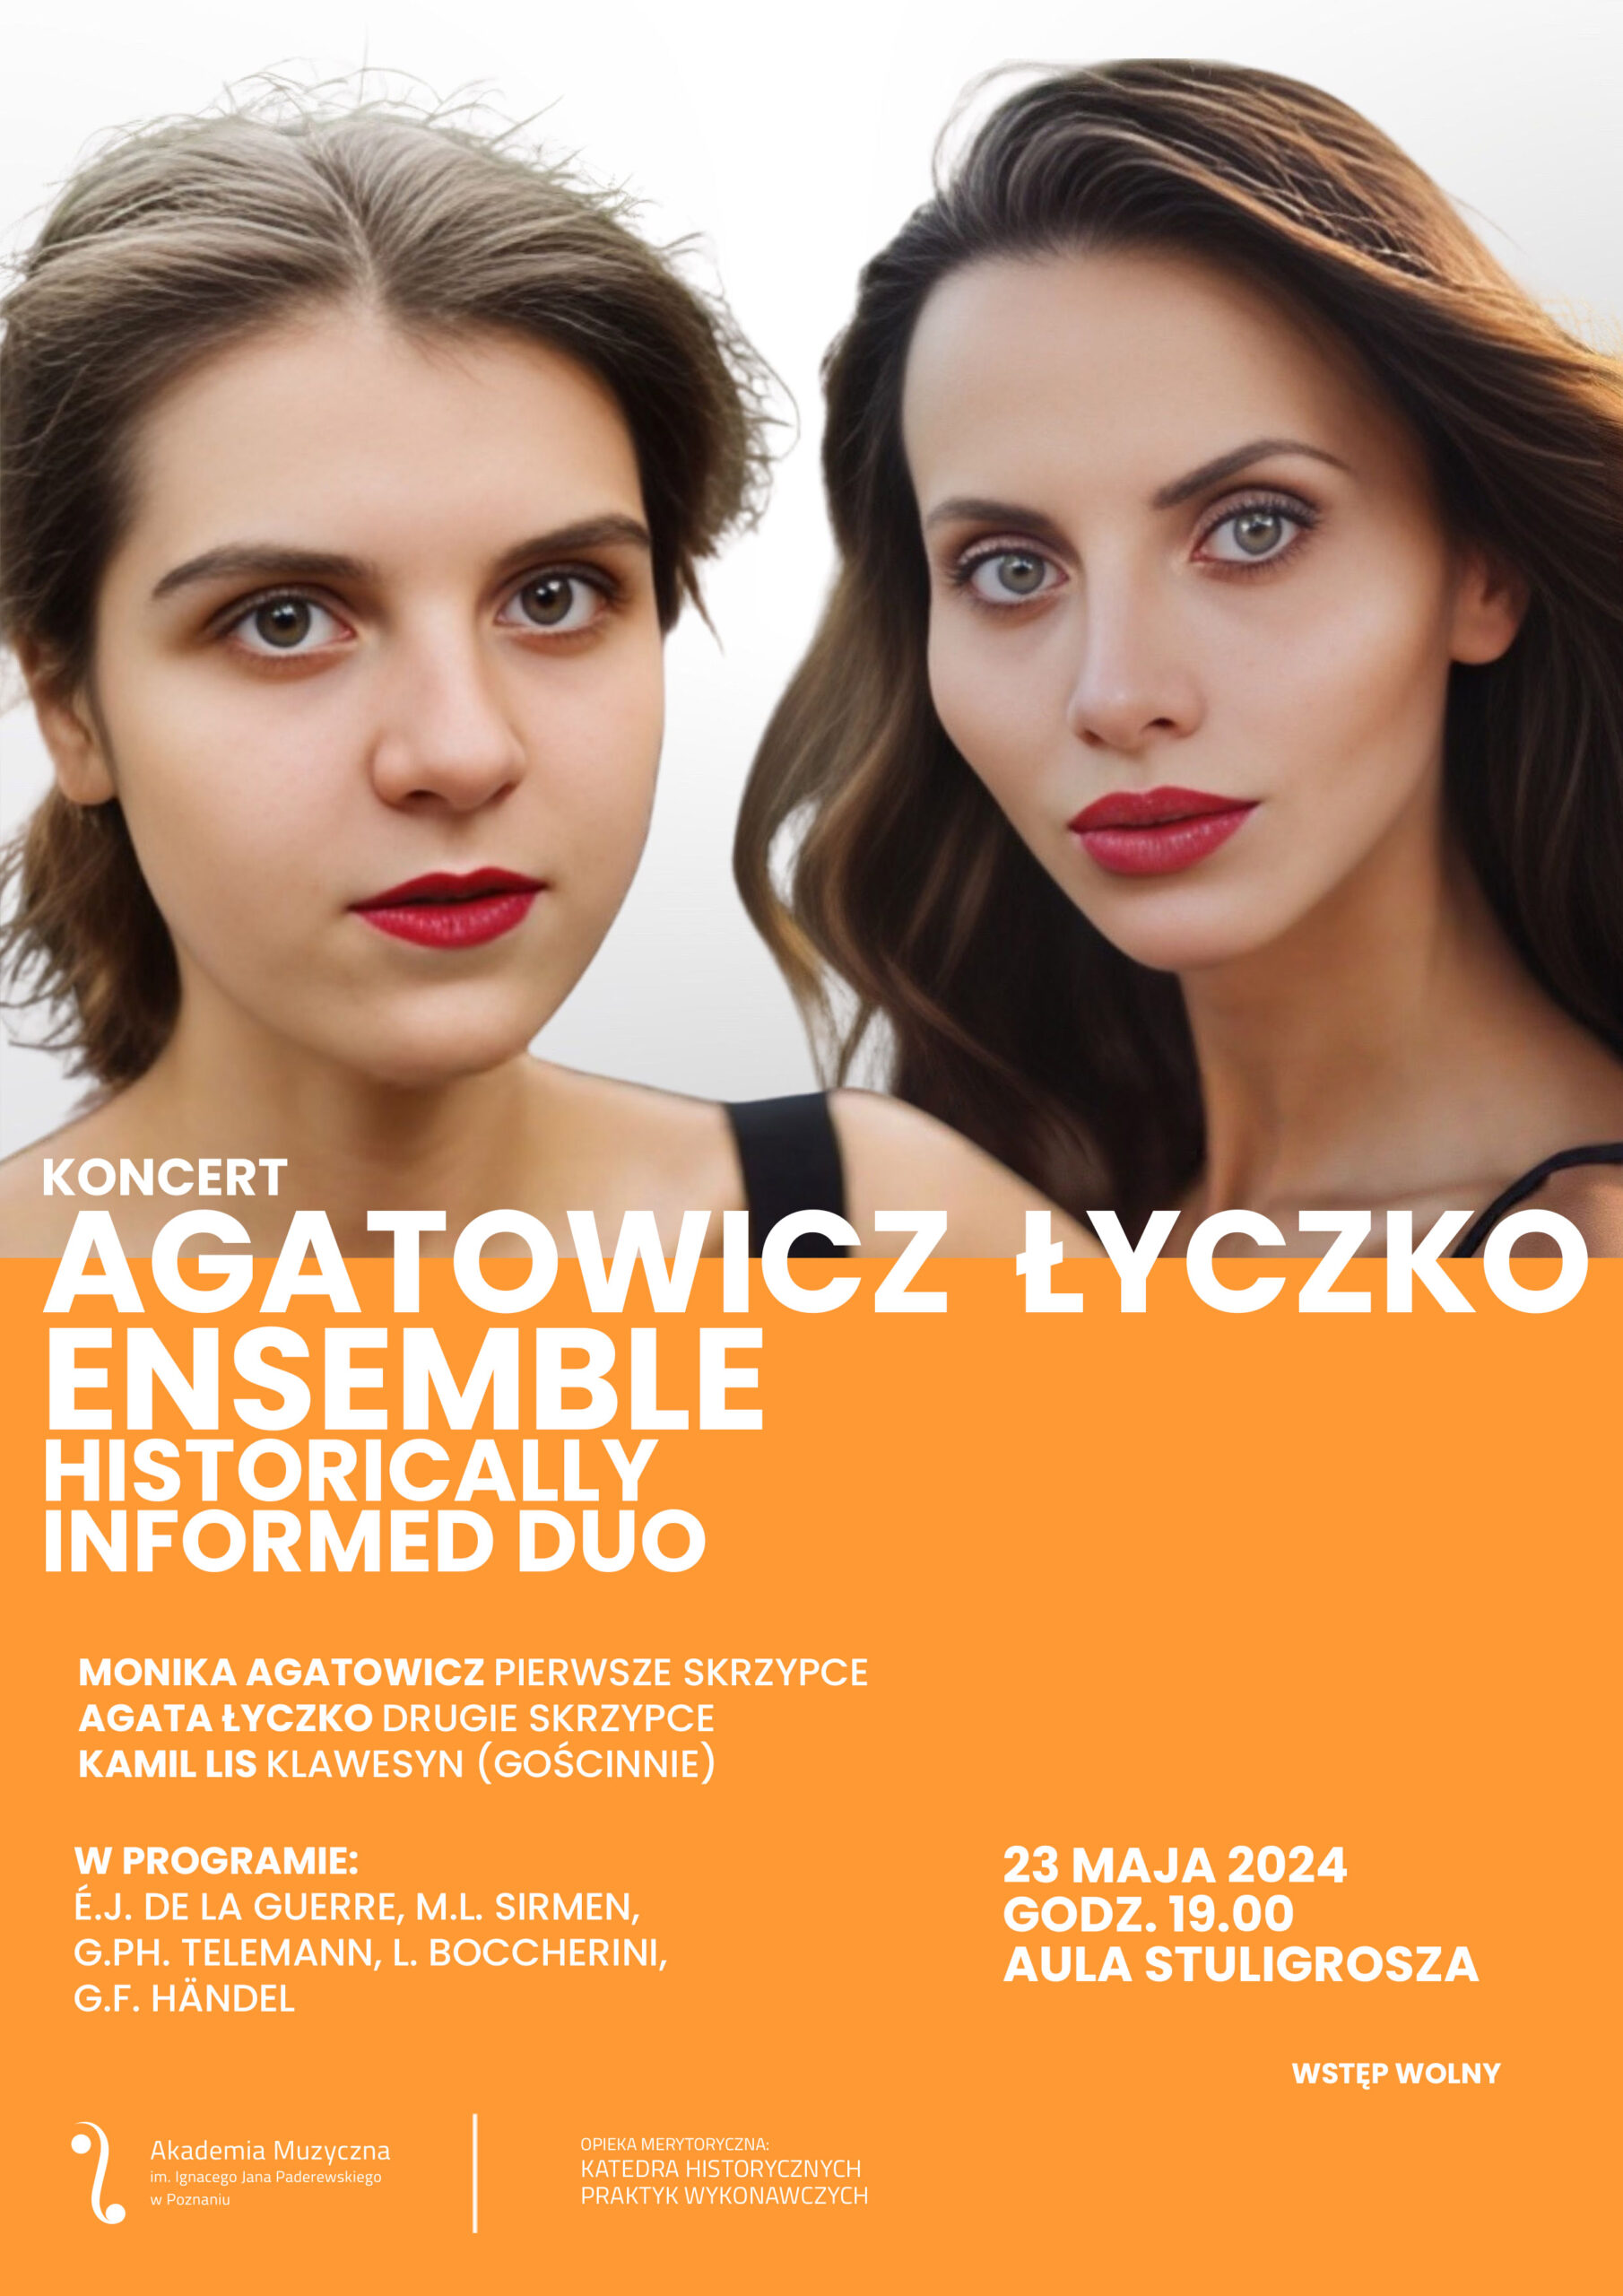 Agatowicz Łyczko Ensemble - plakat zawiera informacje o koncercie w dniu 23 maja 2023; na plakacie widać twarze dwóch młodych kobiet z duetu